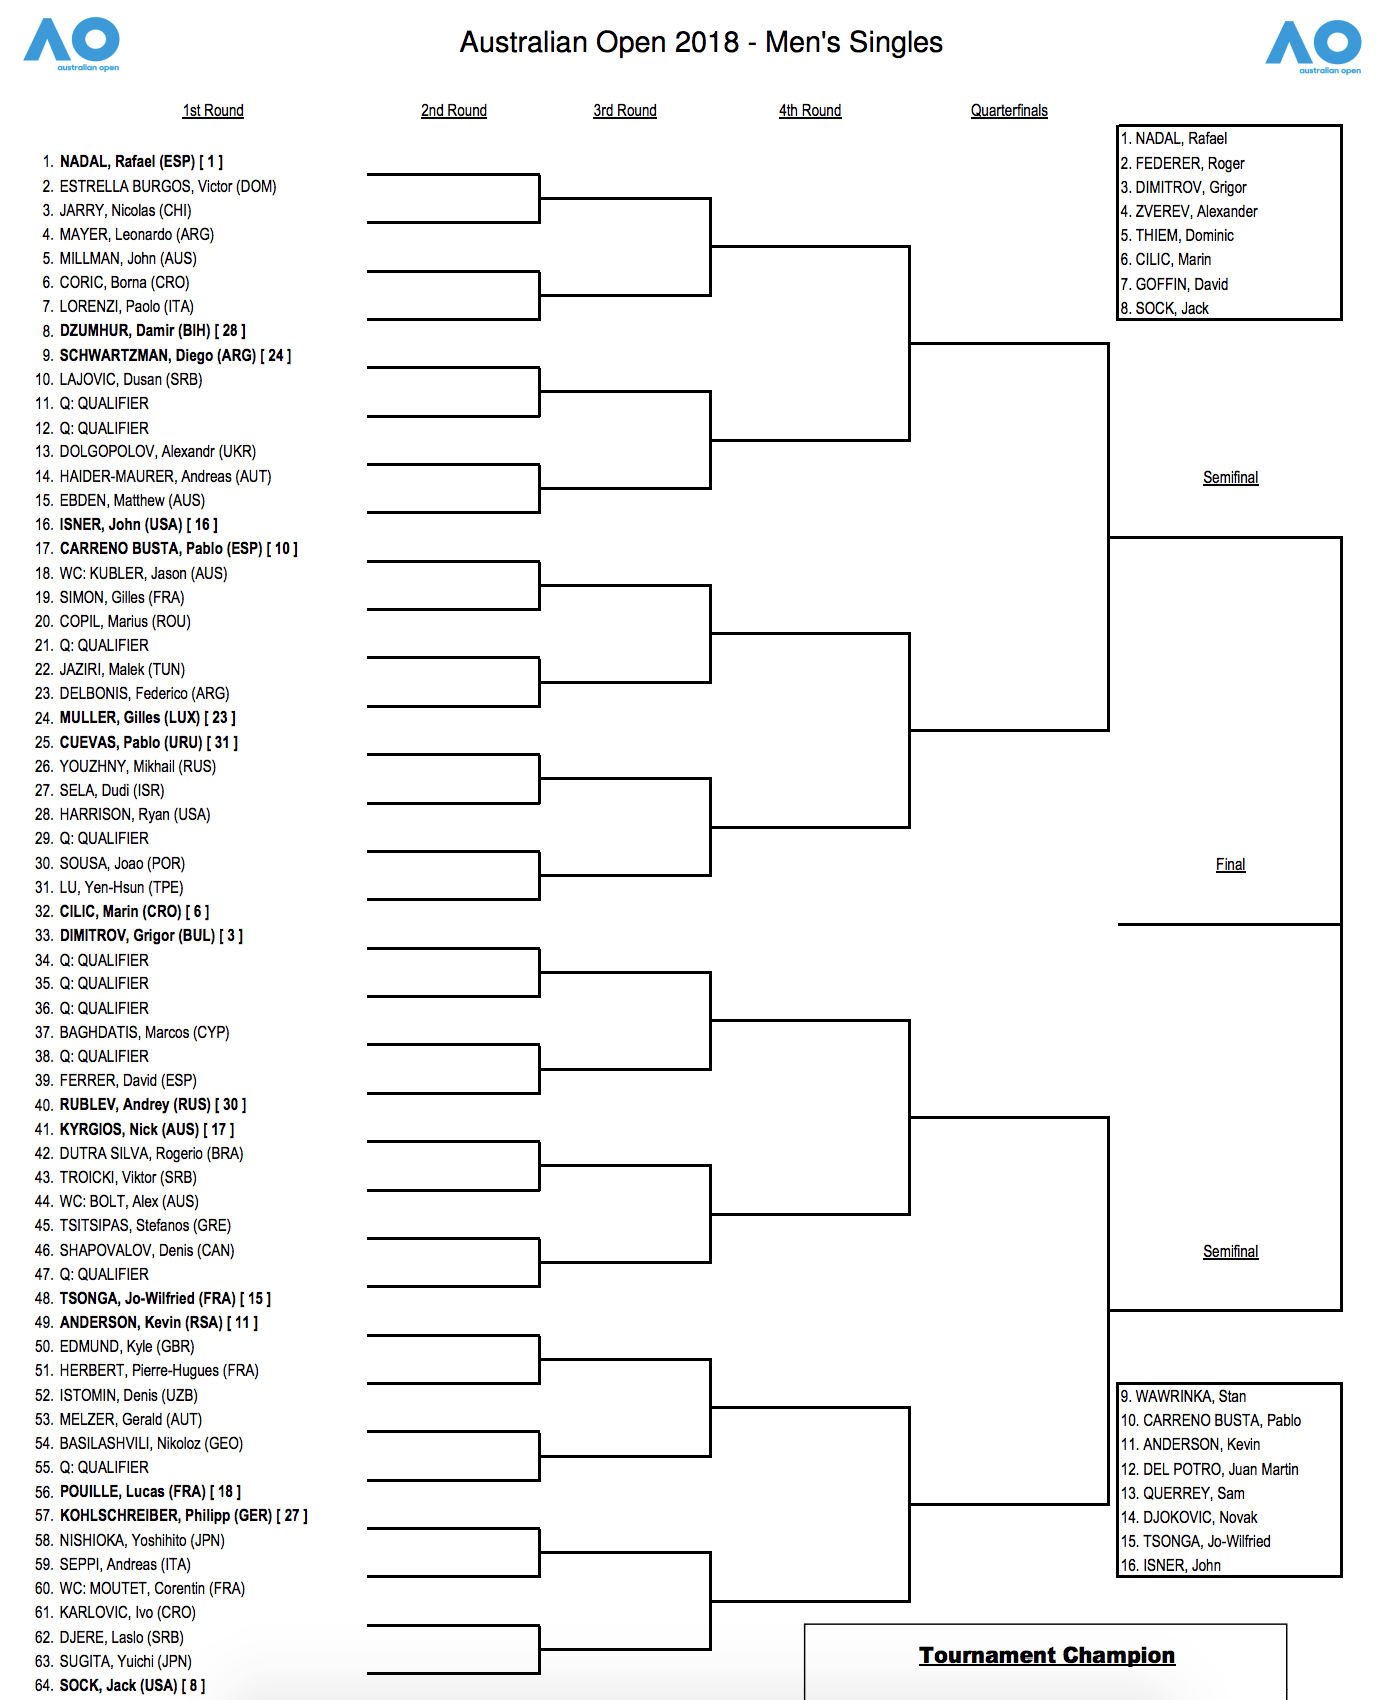 Australian Open Draw 2018  Tennisnerd.net